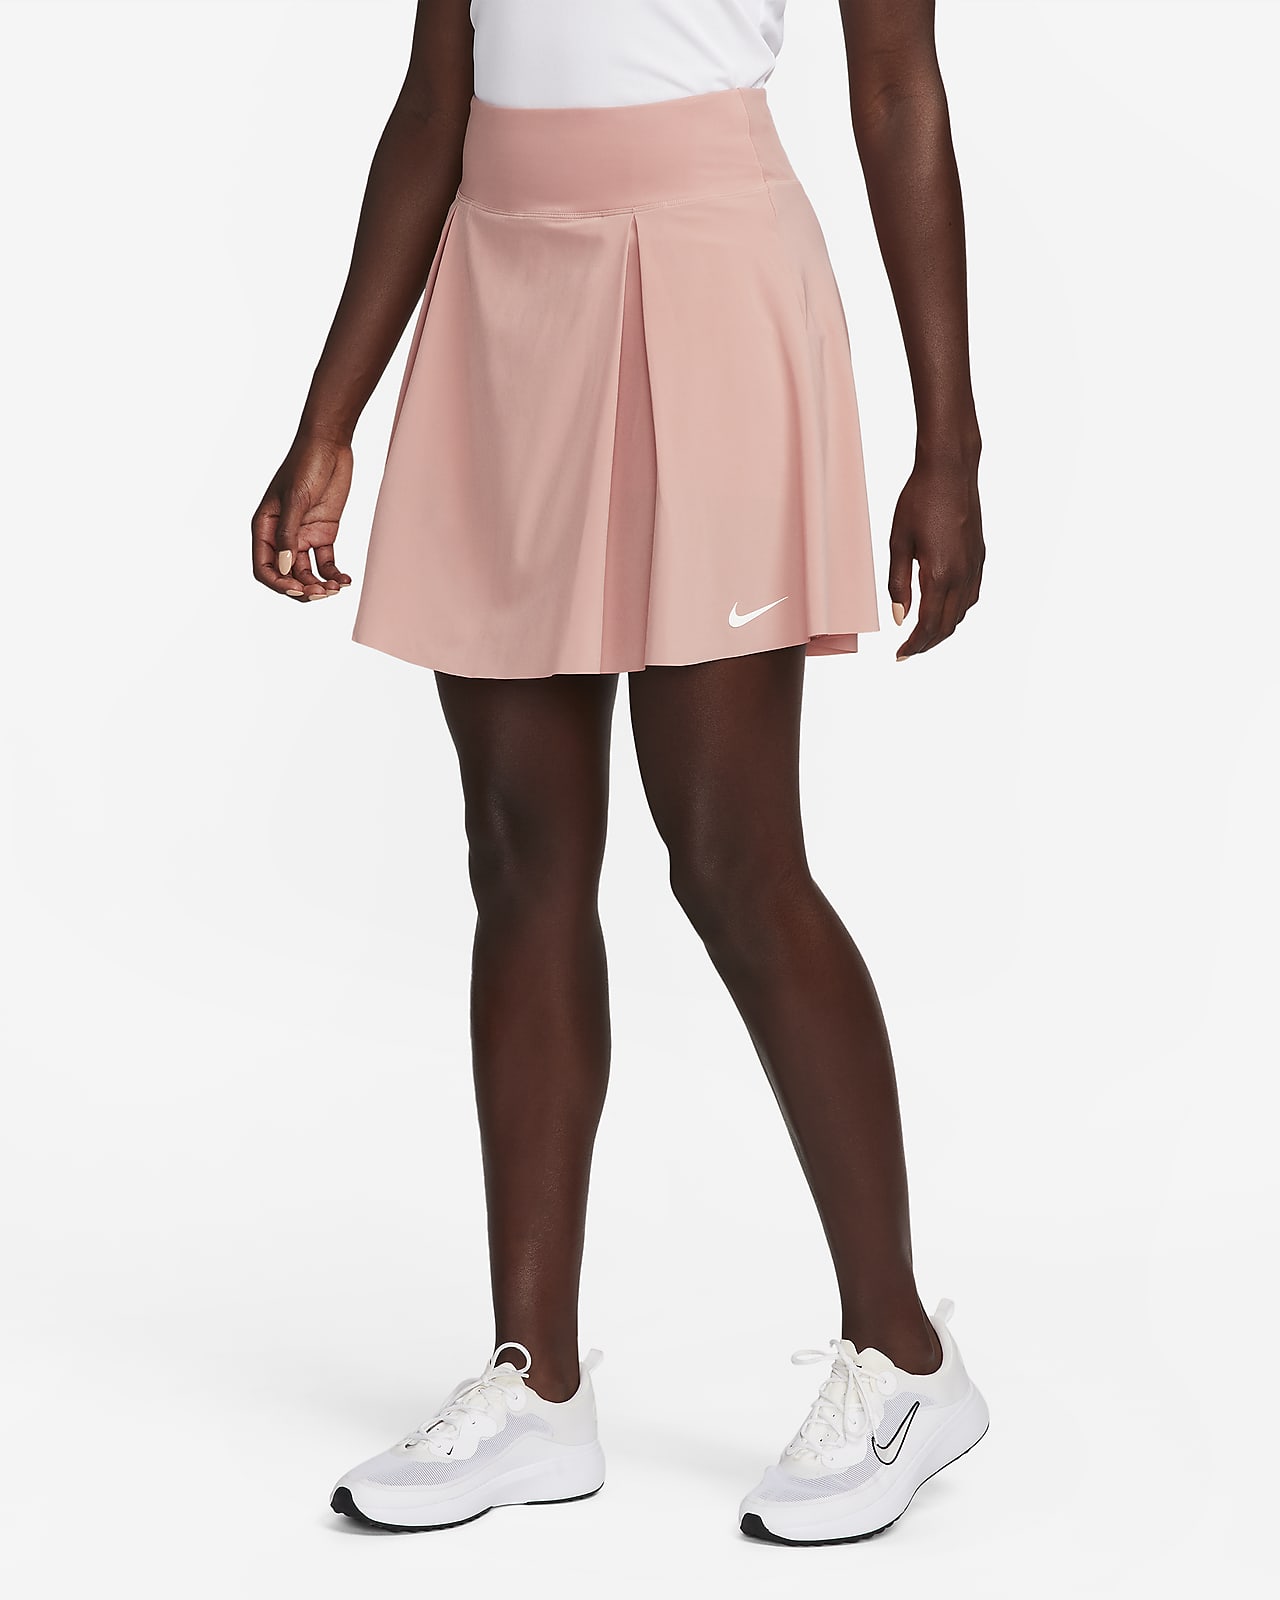 intimidad dejar escarabajo Nike Dri-FIT Advantage Falda de golf larga - Mujer. Nike ES